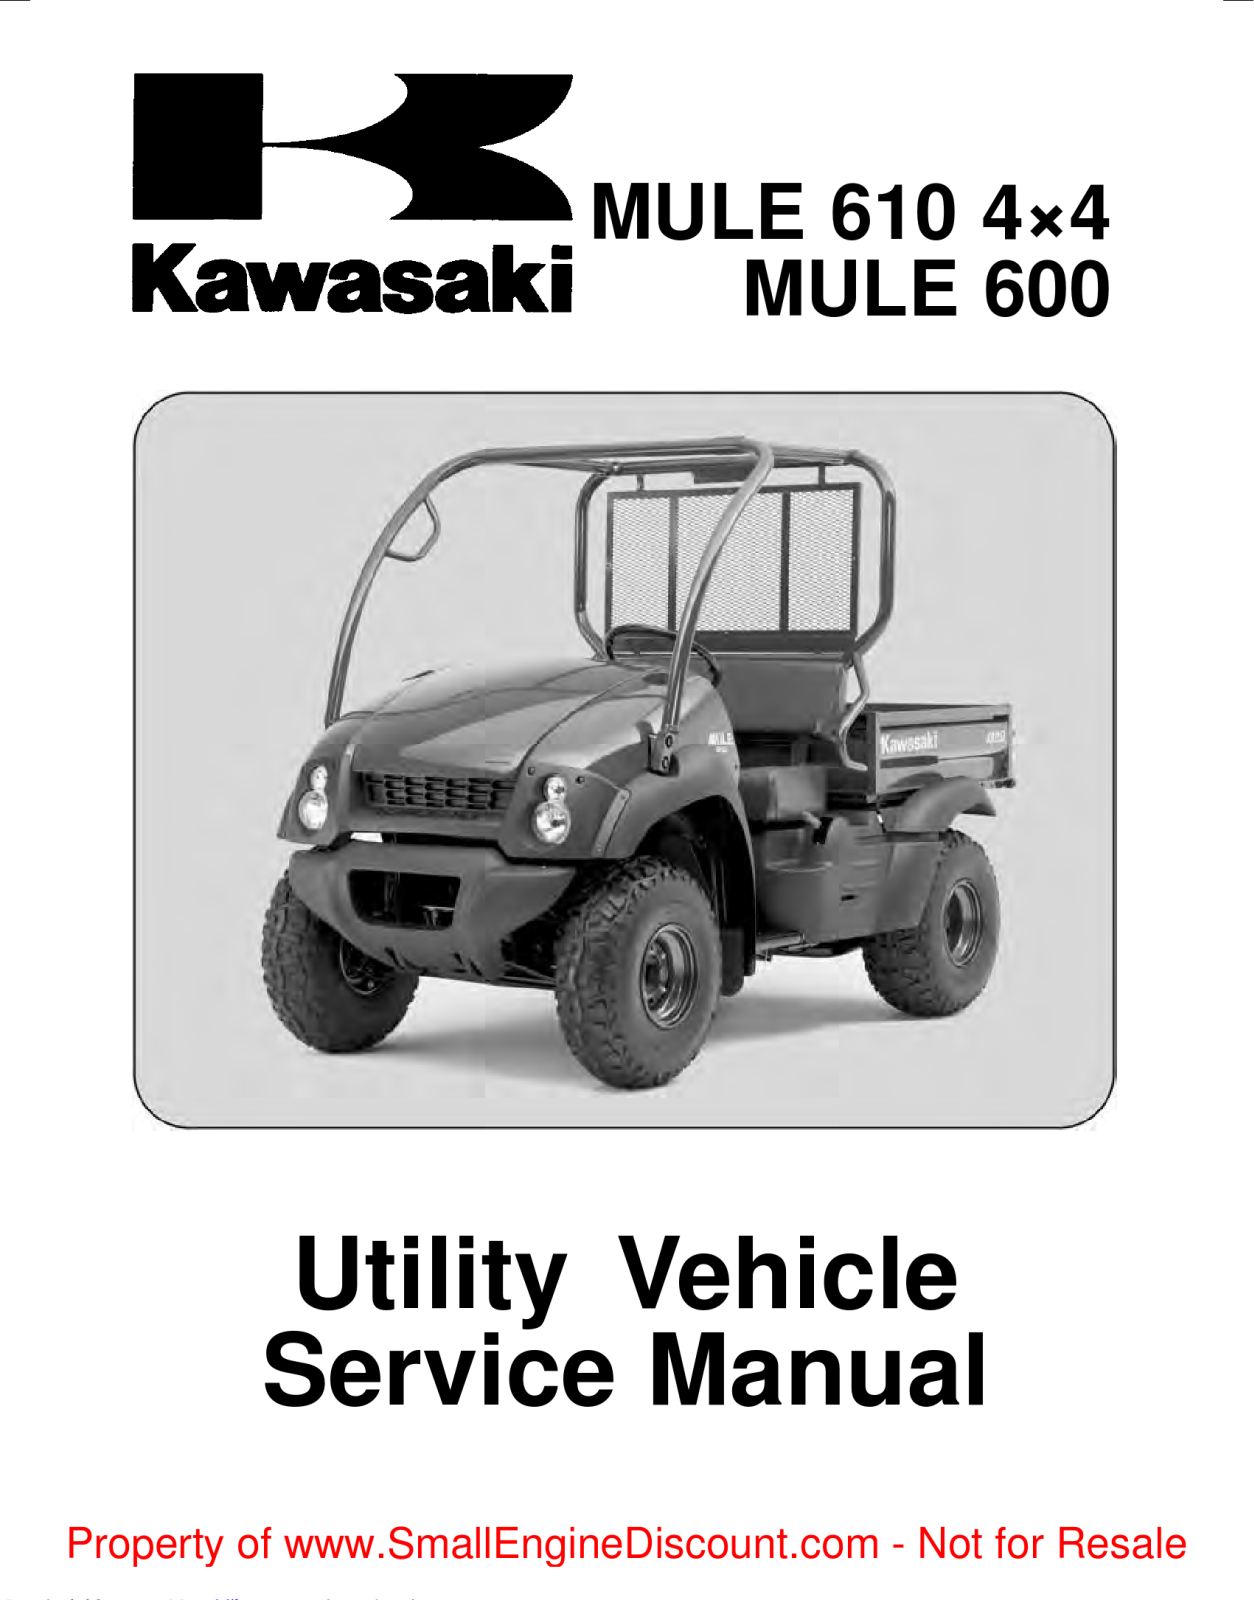 Kawasaki MULE 610 Service Manual